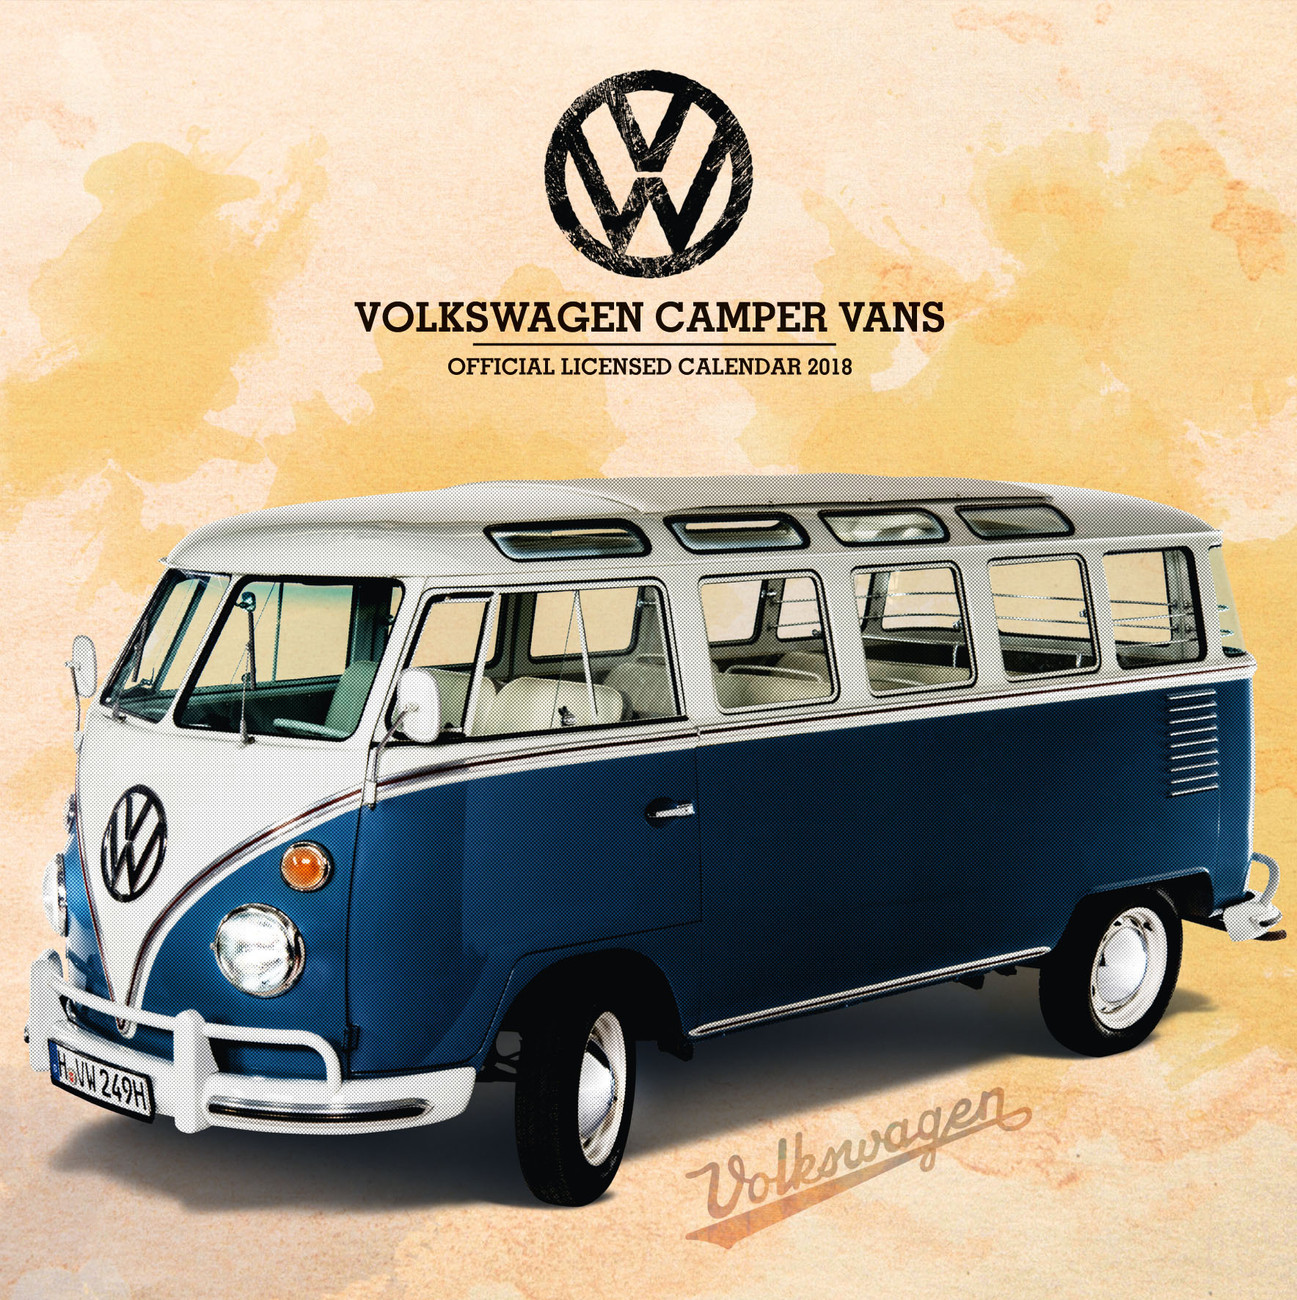 VW Camper Vans - Calendars 2021 on UKposters/EuroPosters